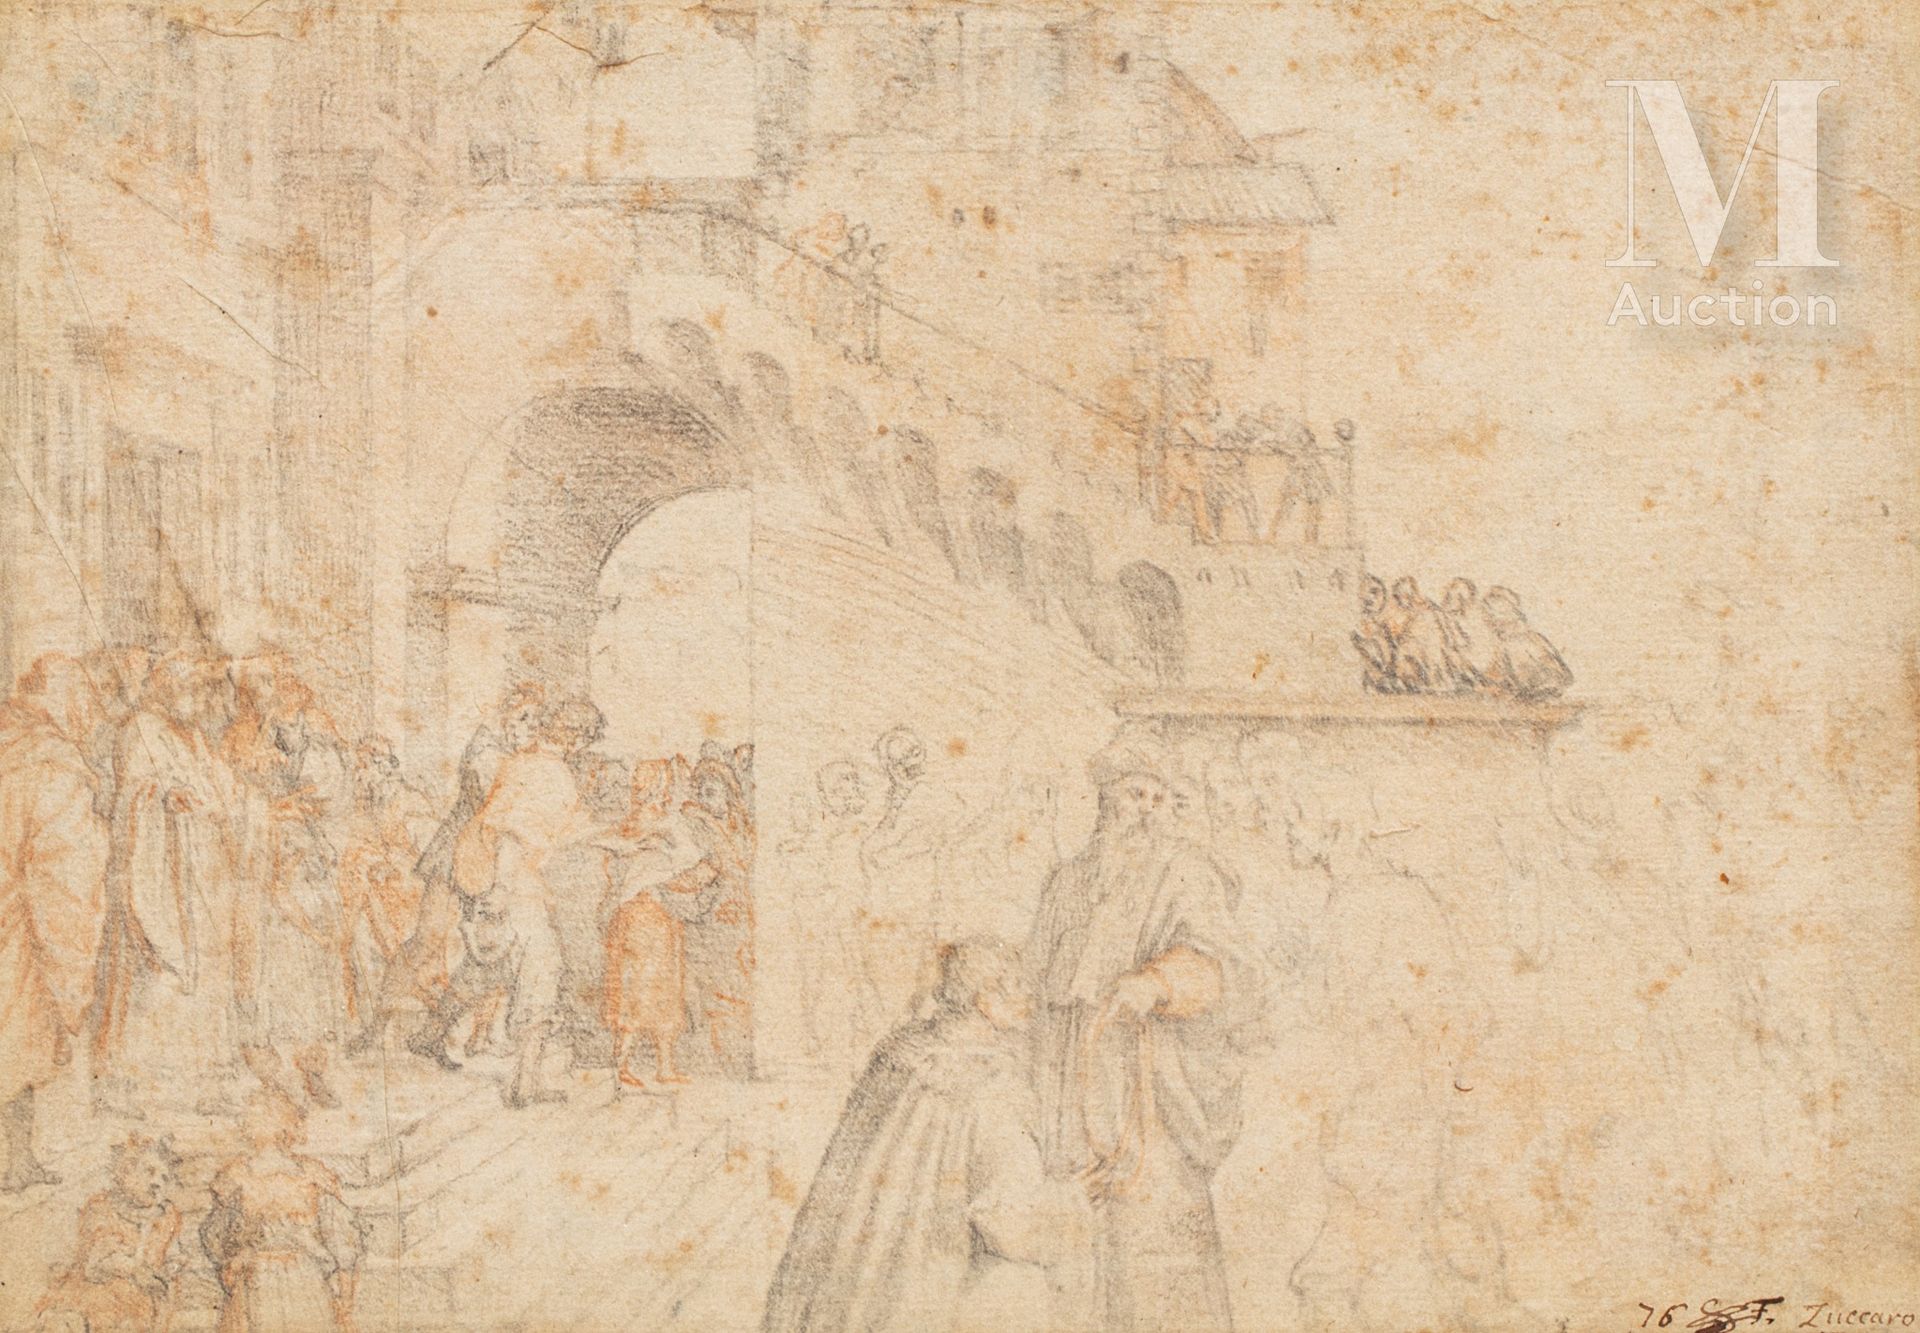 Frederico ZUCCARO (1542 - 1609) Personajes en un Palacio

Dibujo a carboncillo

&hellip;